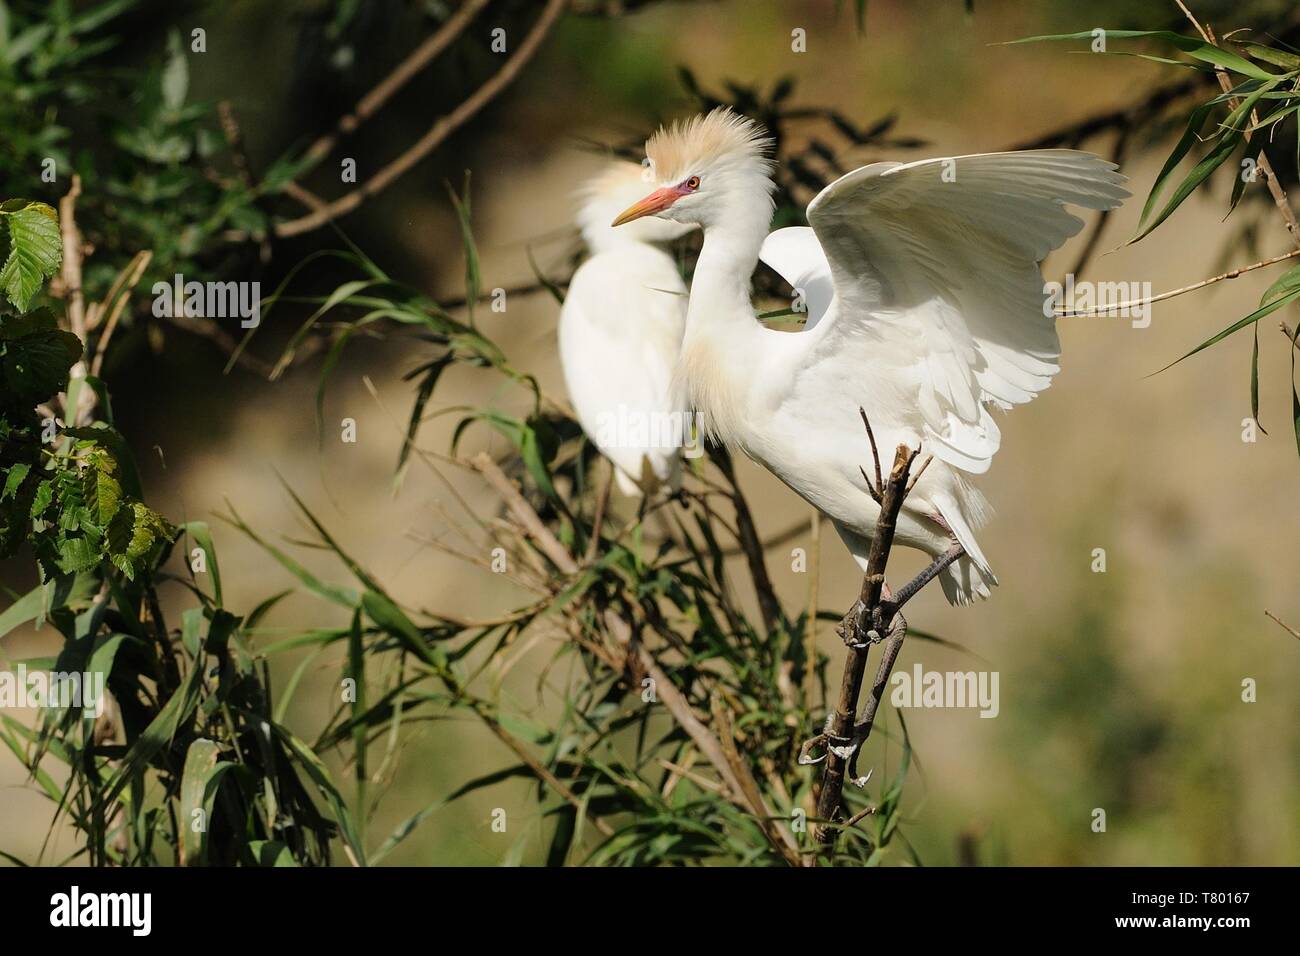 Die Kuhreiher (Bubulcus ibis) auf einen Stiel mit Reed gehockt und seine Flügel. Schöne weiße Reiher mit rotem Schnabel. Stockfoto